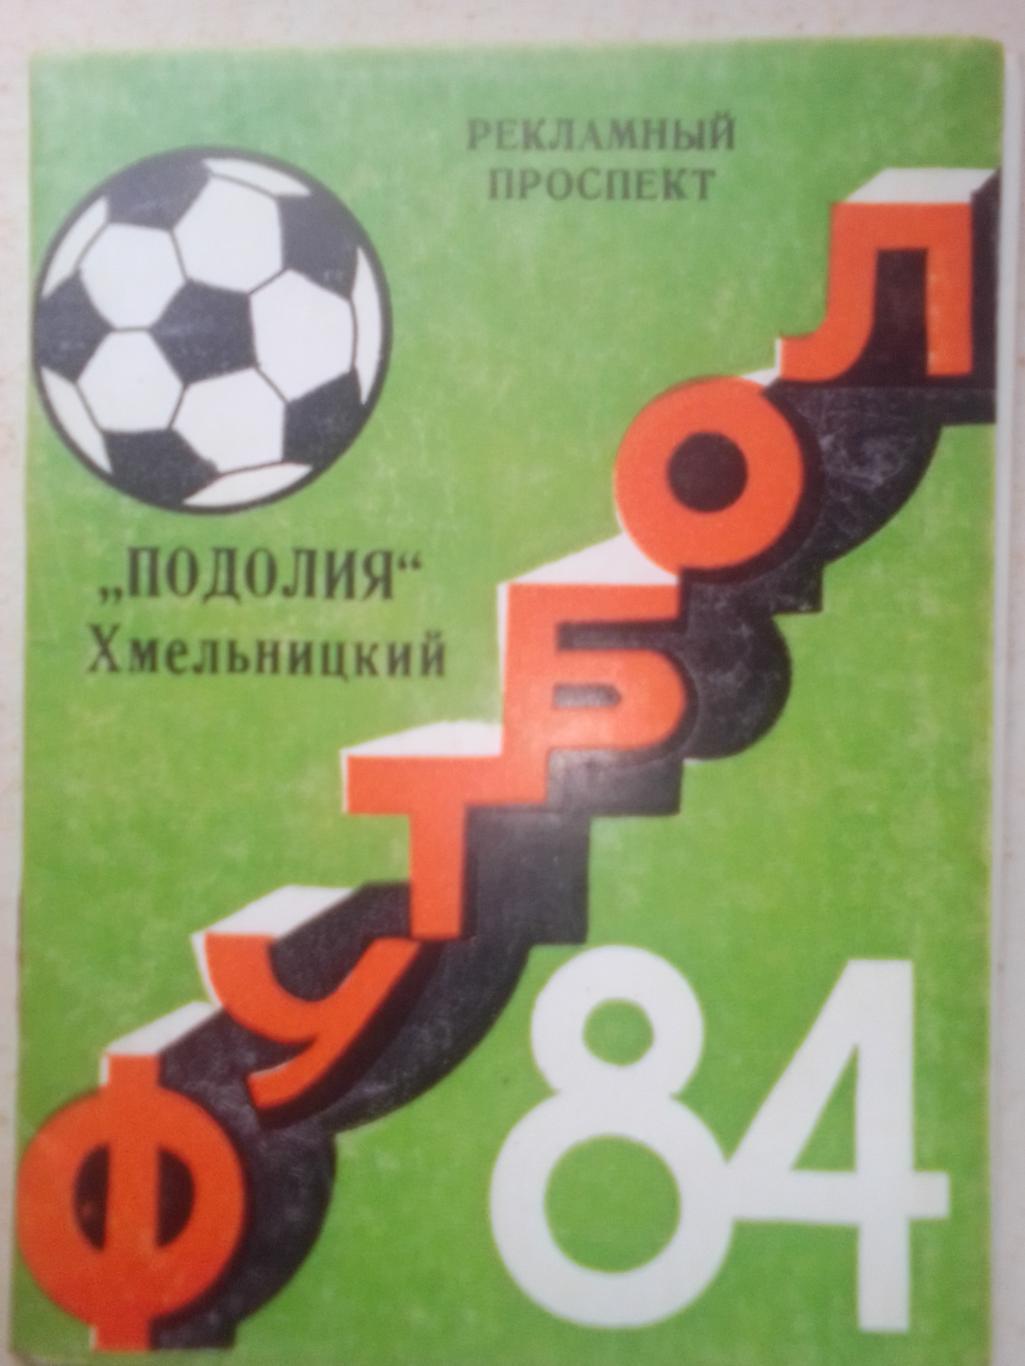 ФК Подолия Хмельницкий 1984 год.